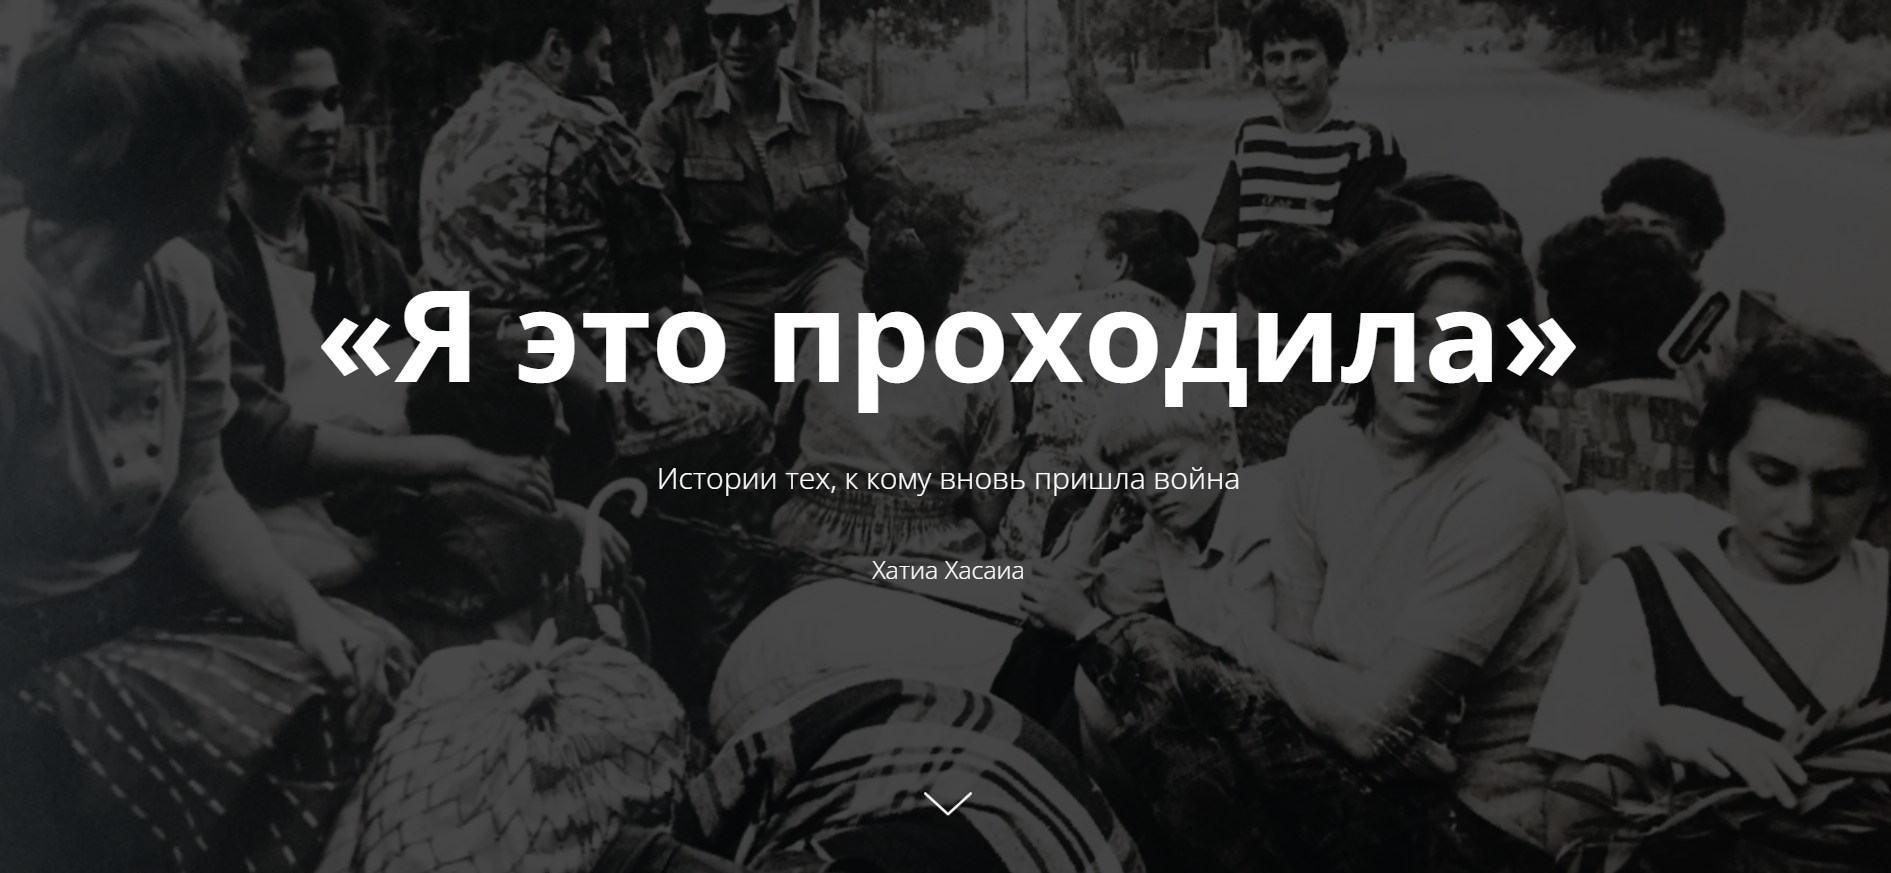 untitled политика featured, Абхазия, война в Украине, Россия, украина